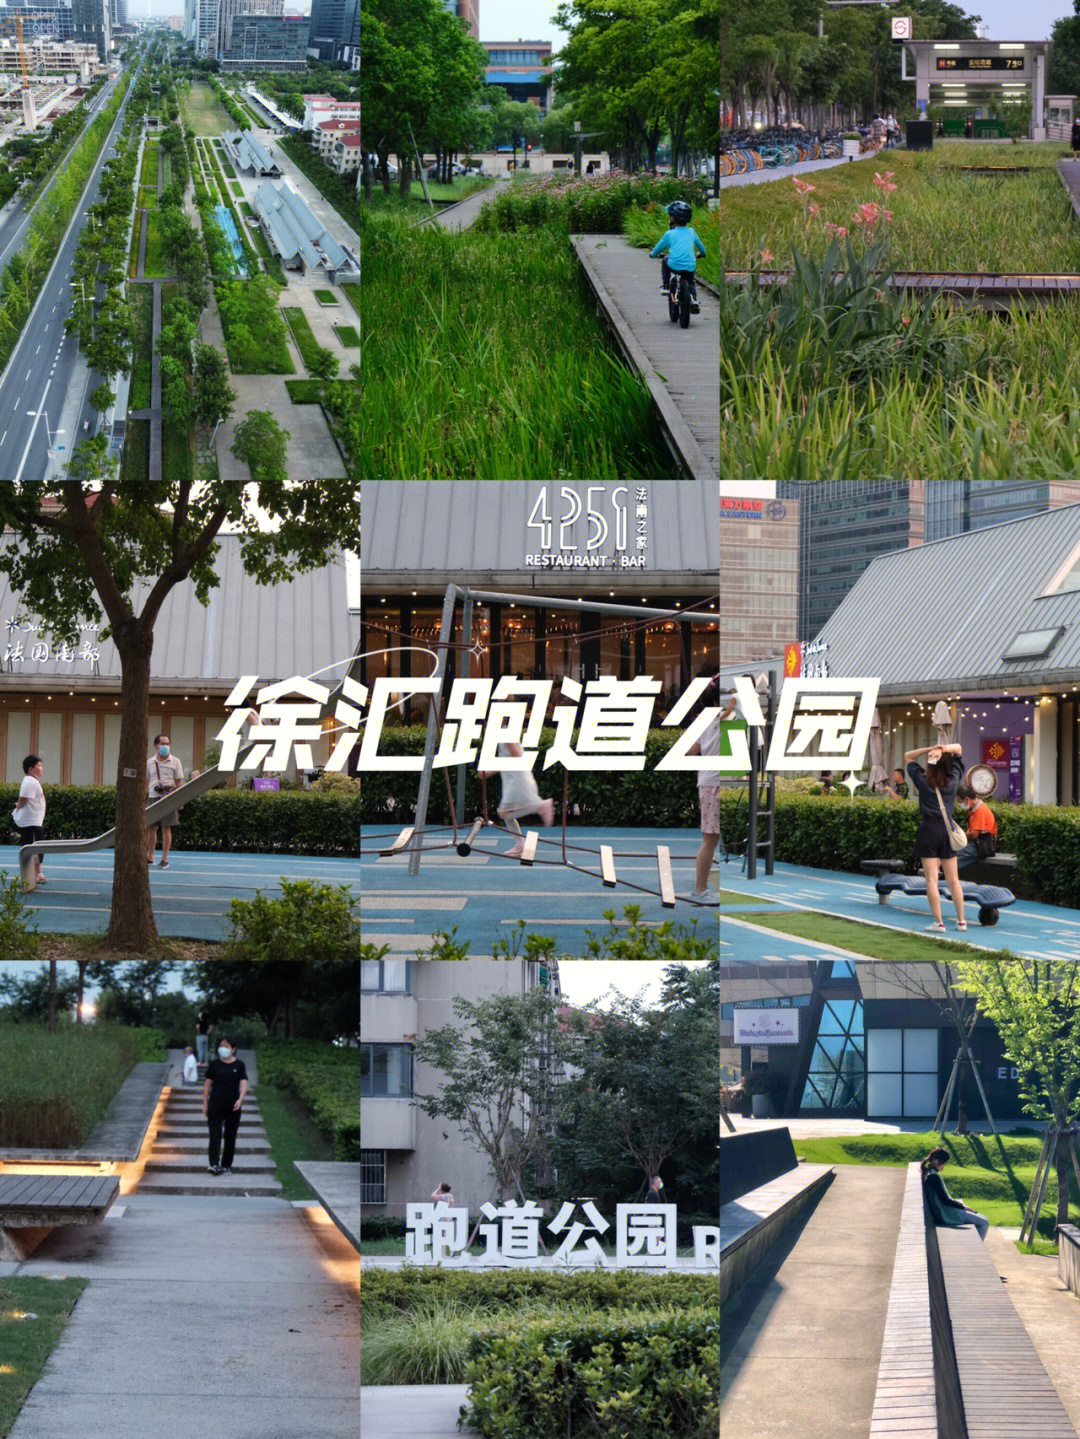 徐汇跑道公园是原龙华机场跑道所在地,由国际知名景观设计公司sasaki